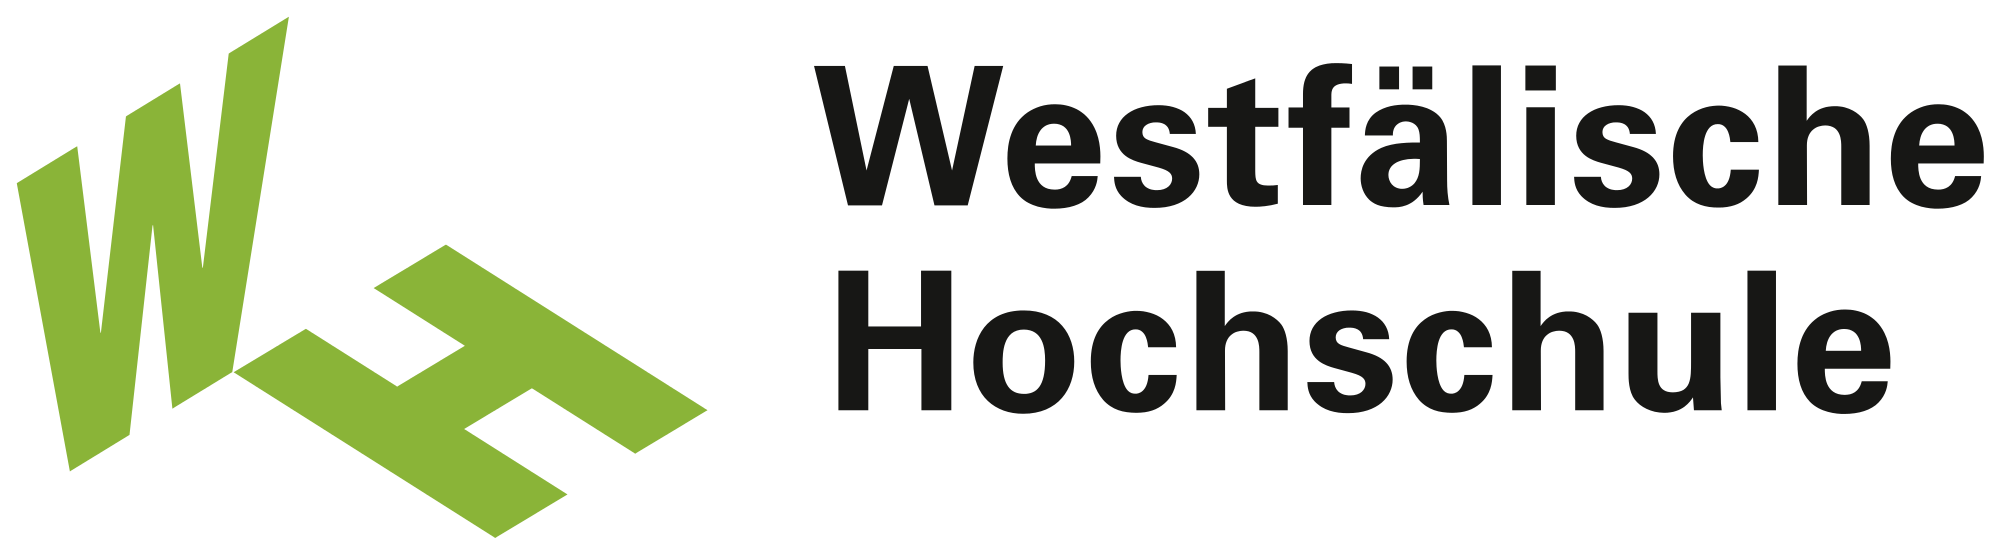 Virtual Sensors - Westfälische Hochschule